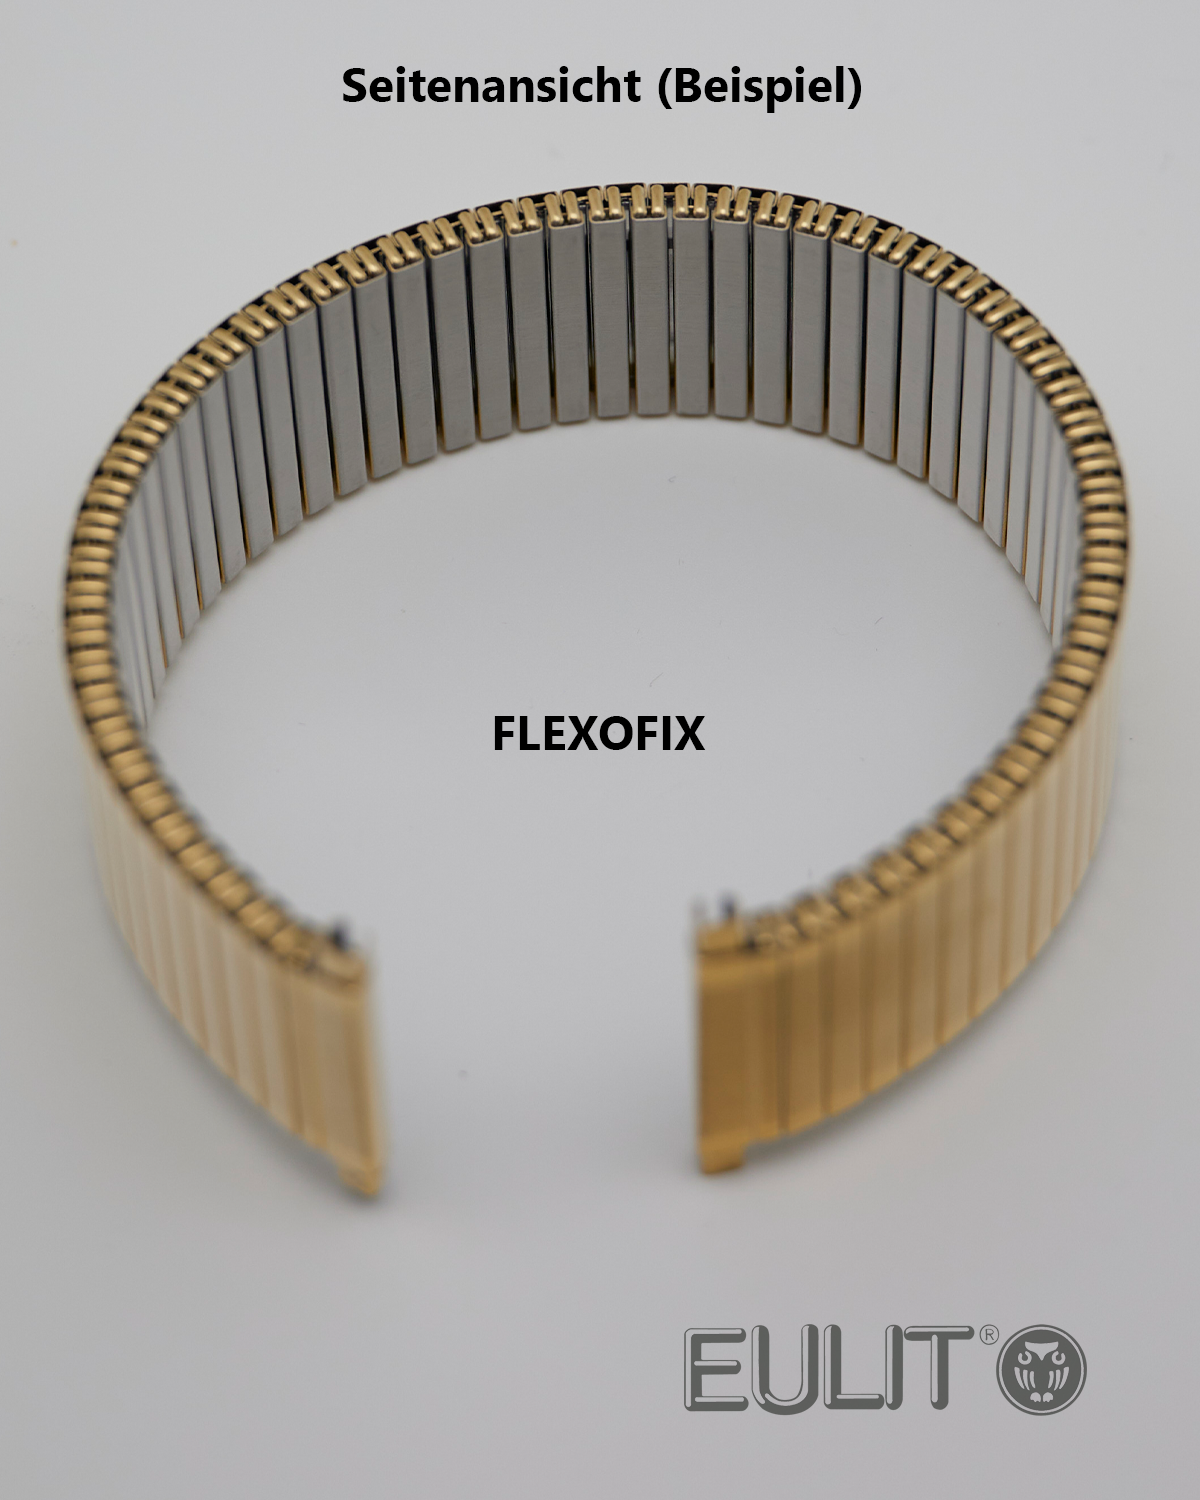 76-415002 EULIT FLEXOFIX 18-20 mm vergoldet